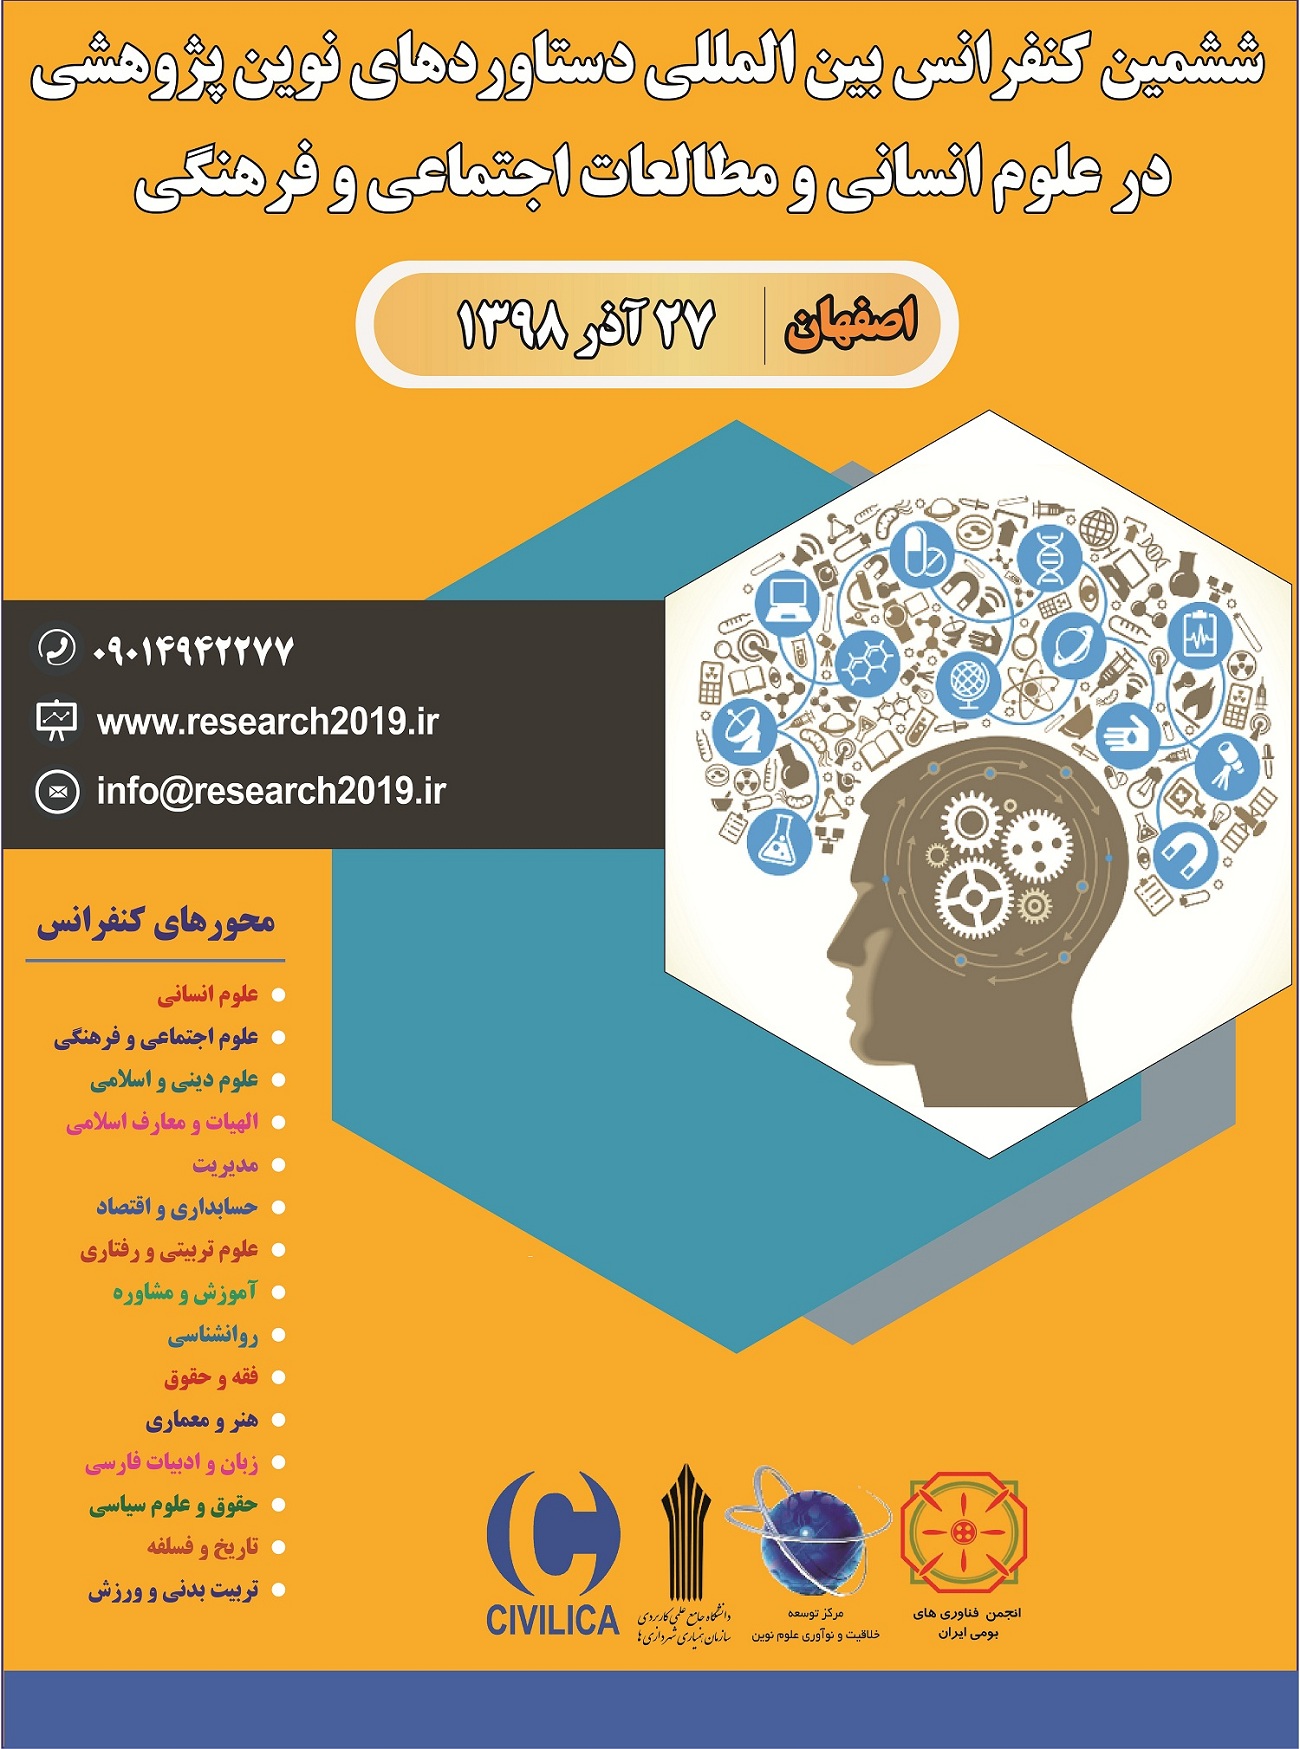 پوستر ششمین کنفرانس بین المللی دستاوردهای نوین پژوهشی در علوم انسانی و مطالعات اجتماعی و فرهنگی